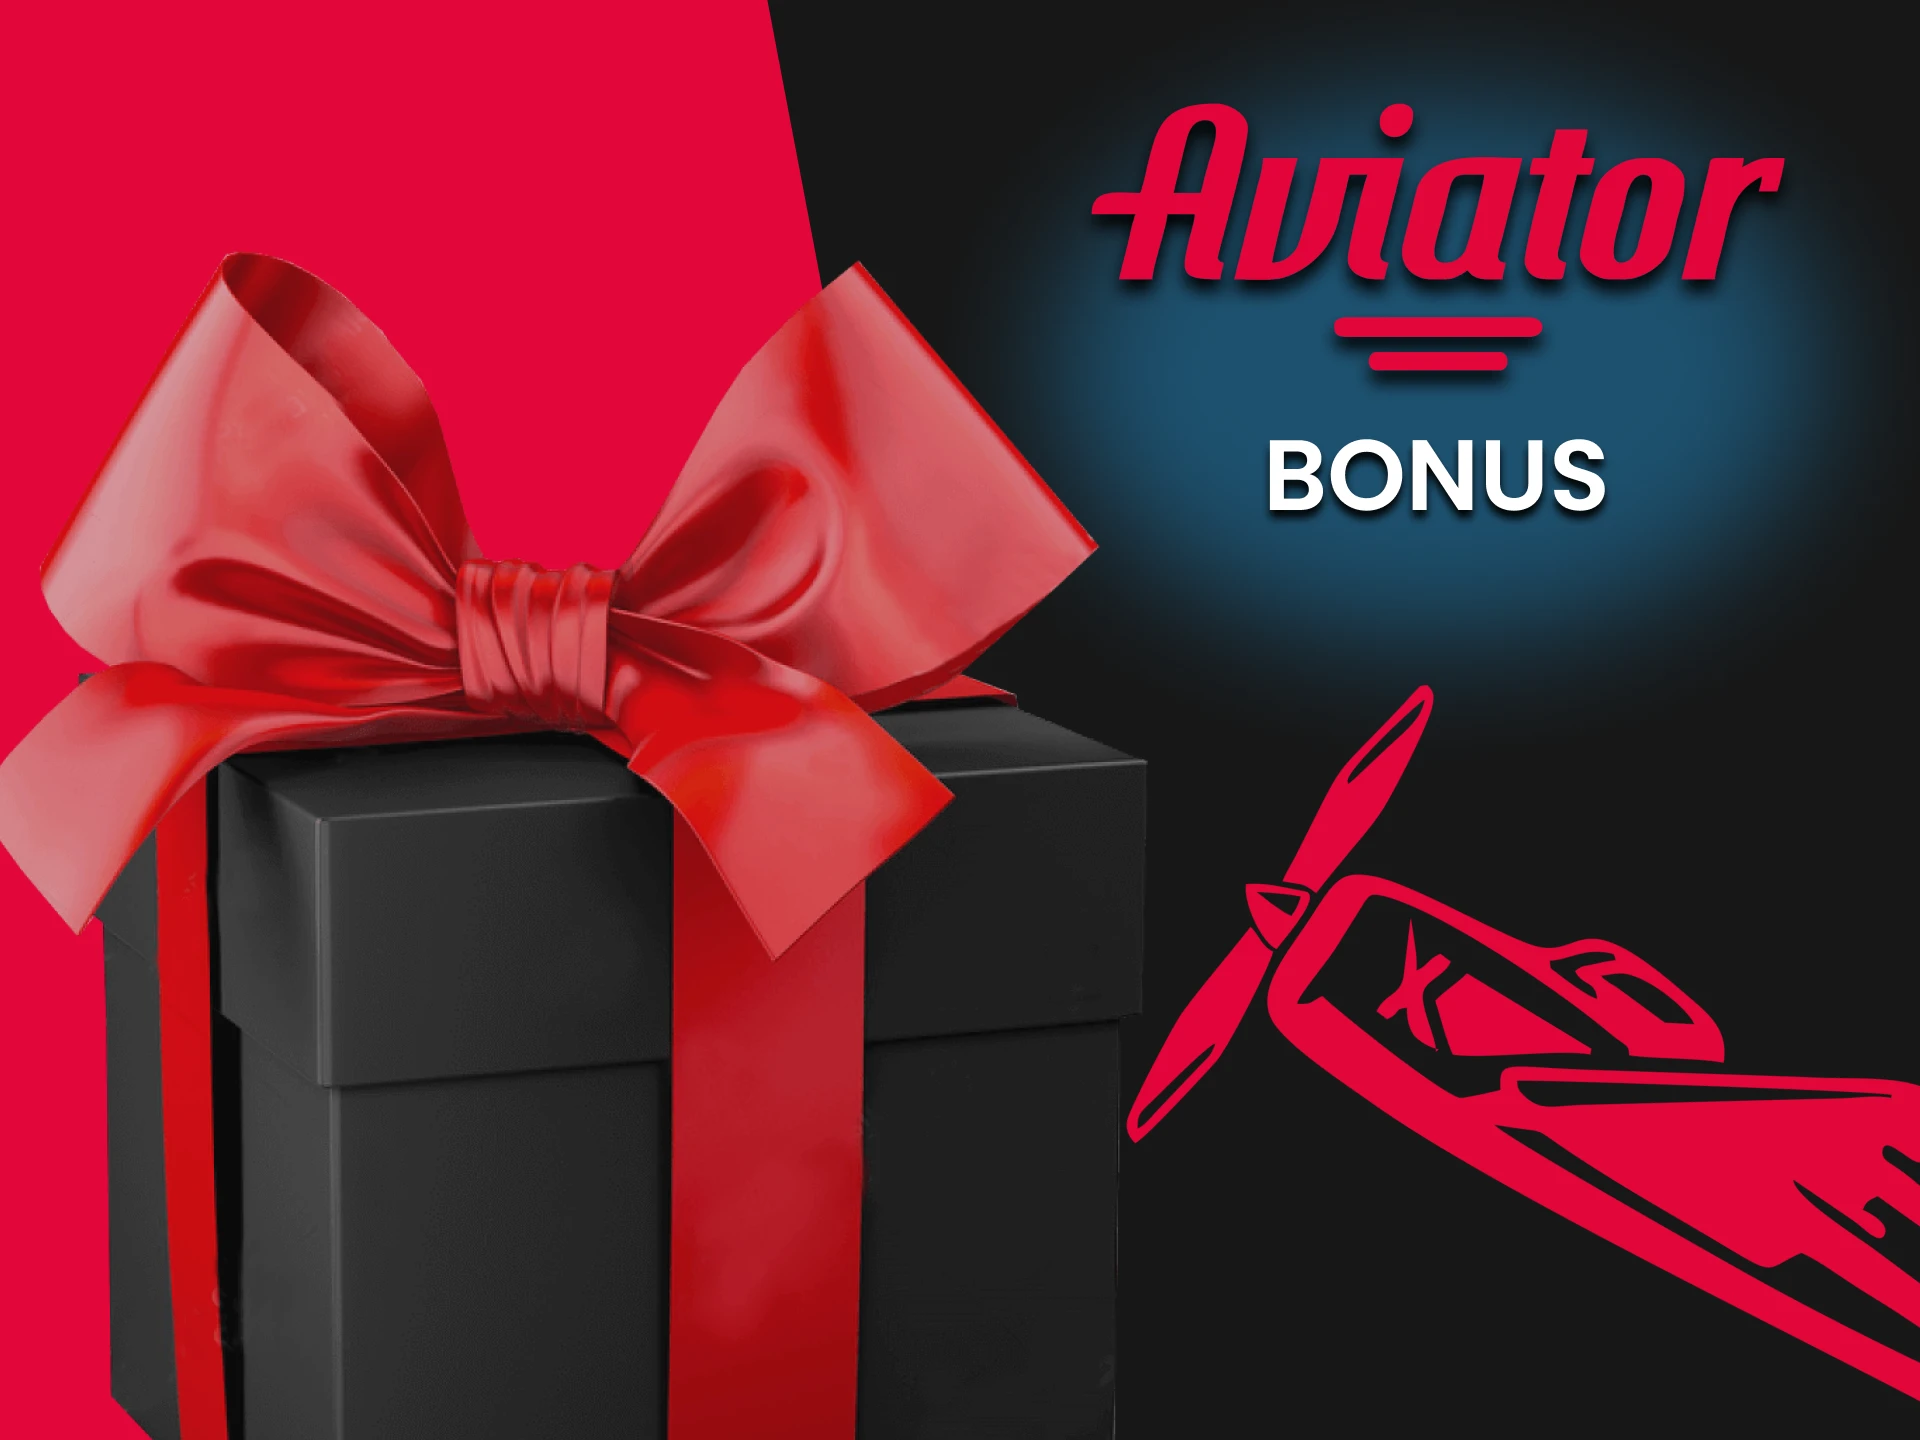 Il existe de nombreux bonus pour le jeu Aviator.